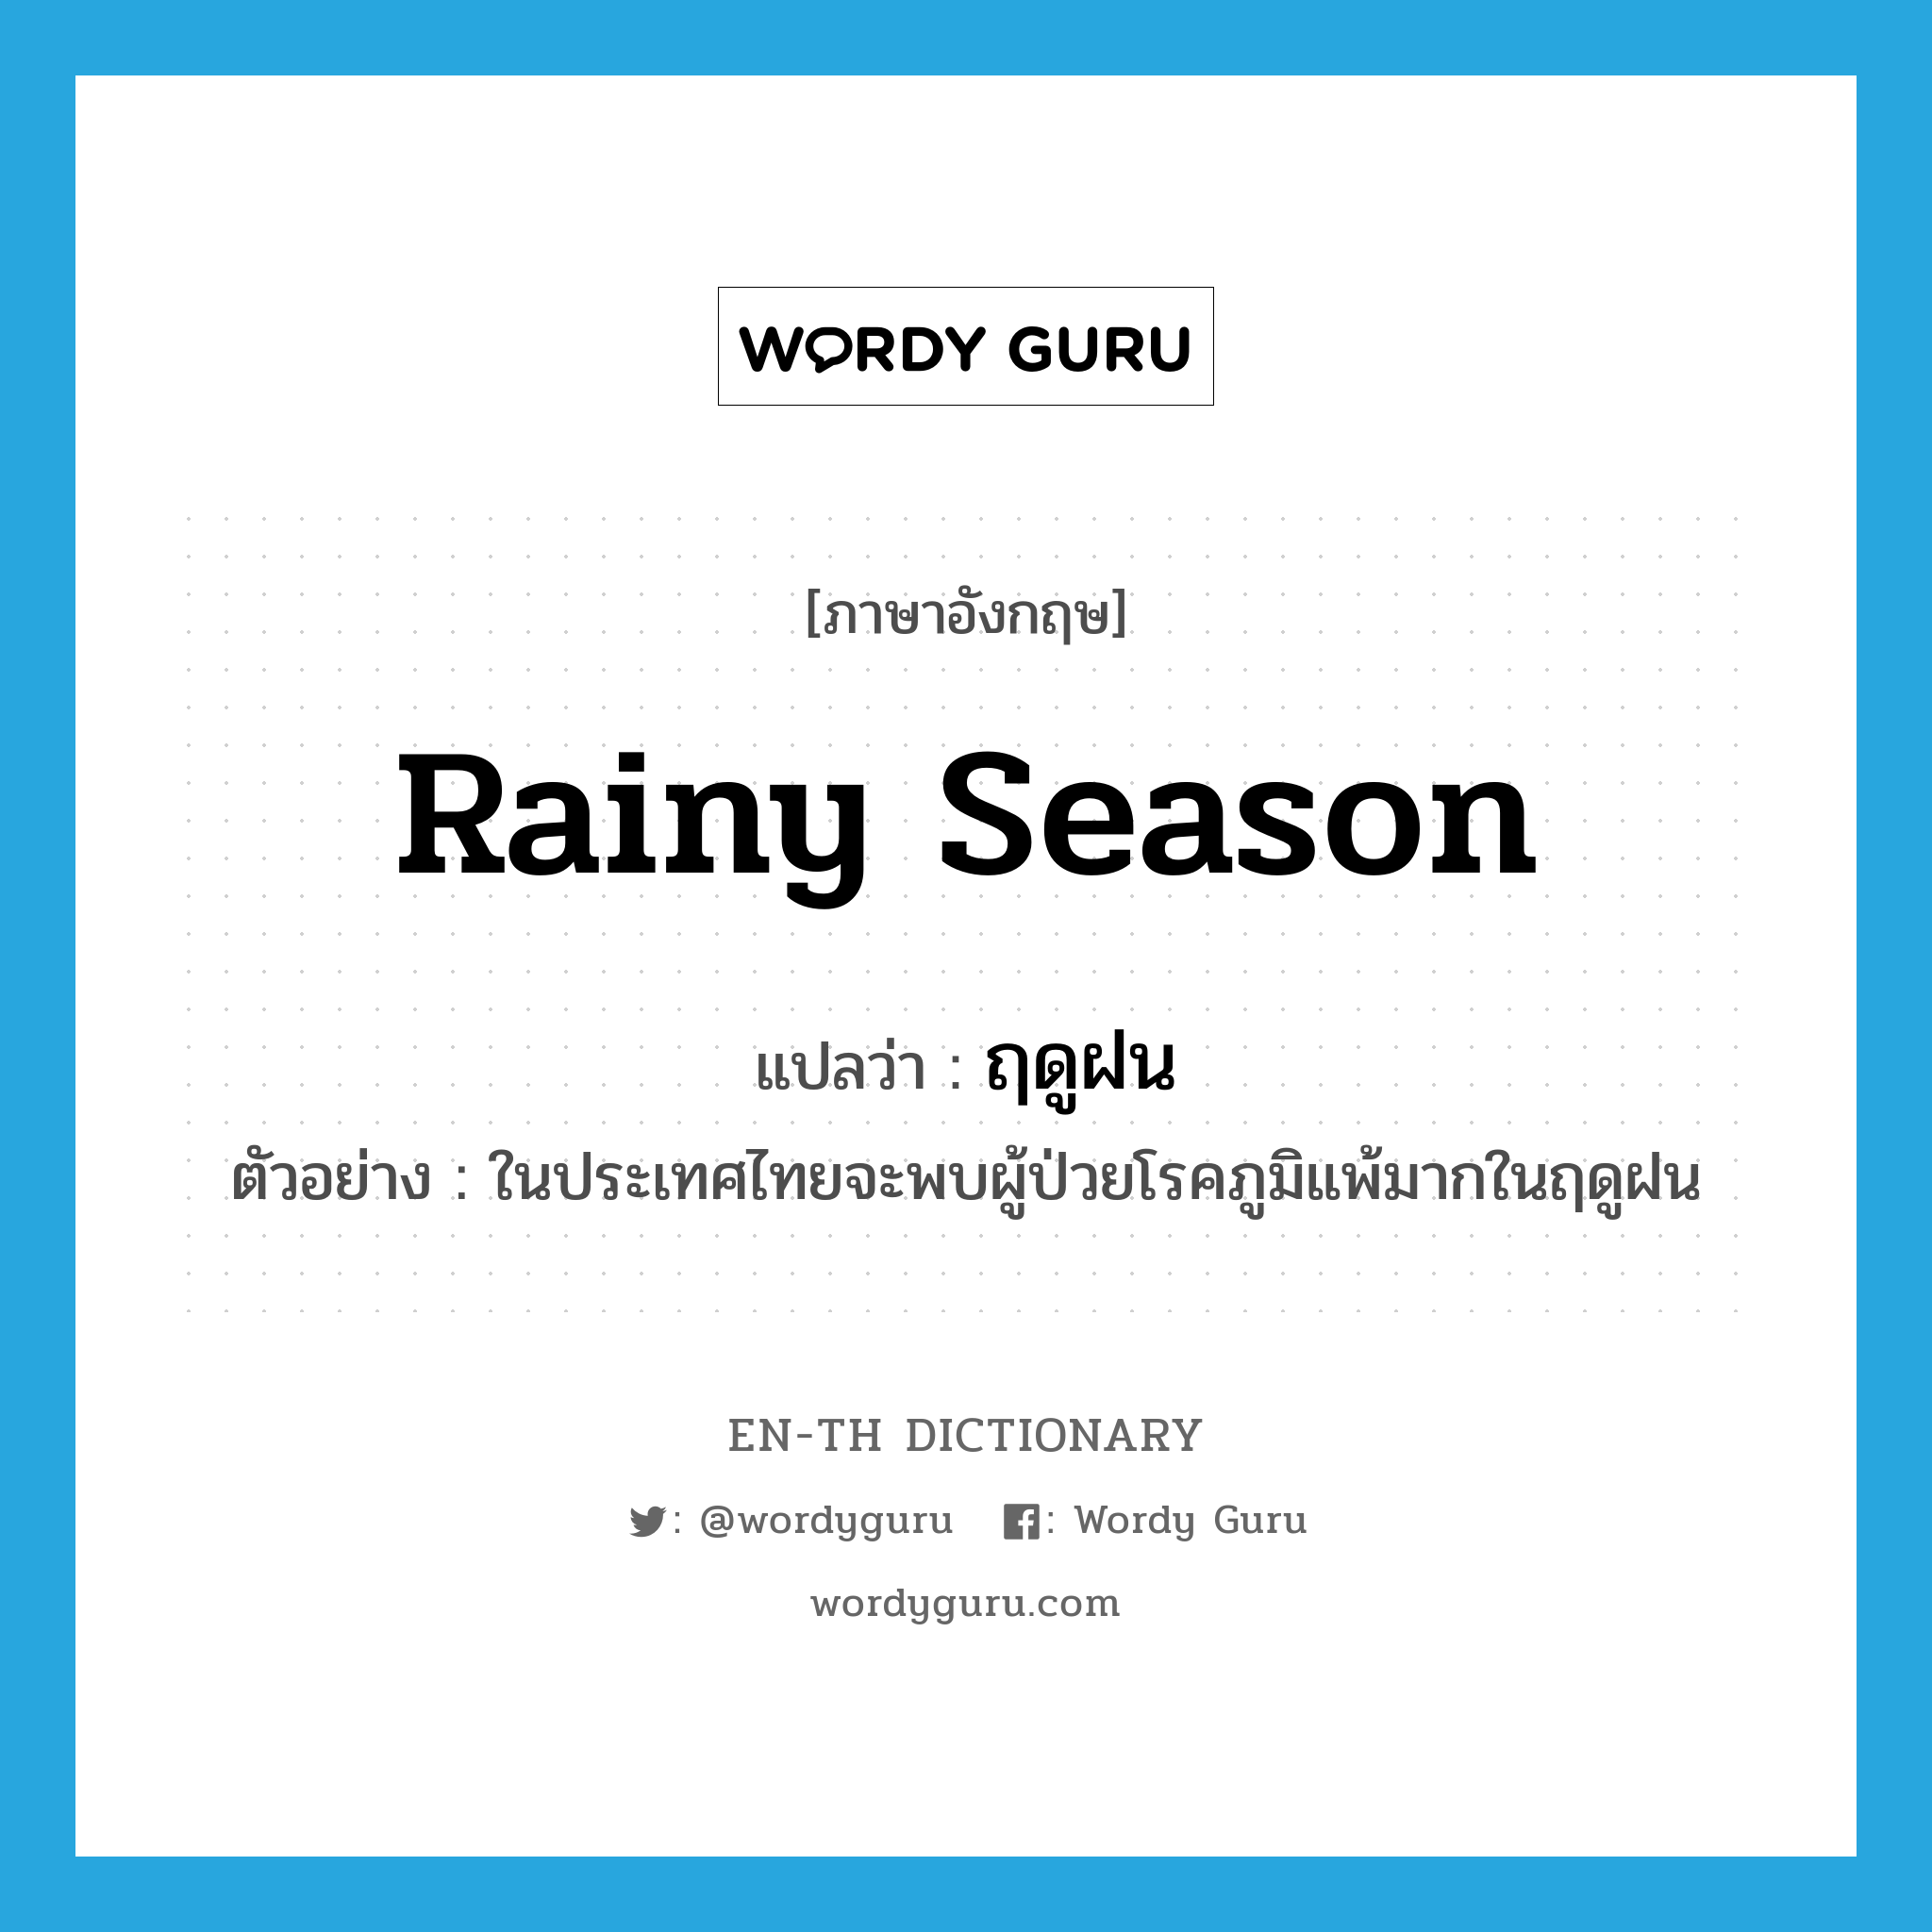 ฤดูฝน ภาษาอังกฤษ?, คำศัพท์ภาษาอังกฤษ ฤดูฝน แปลว่า rainy season ประเภท N ตัวอย่าง ในประเทศไทยจะพบผู้ป่วยโรคภูมิแพ้มากในฤดูฝน หมวด N